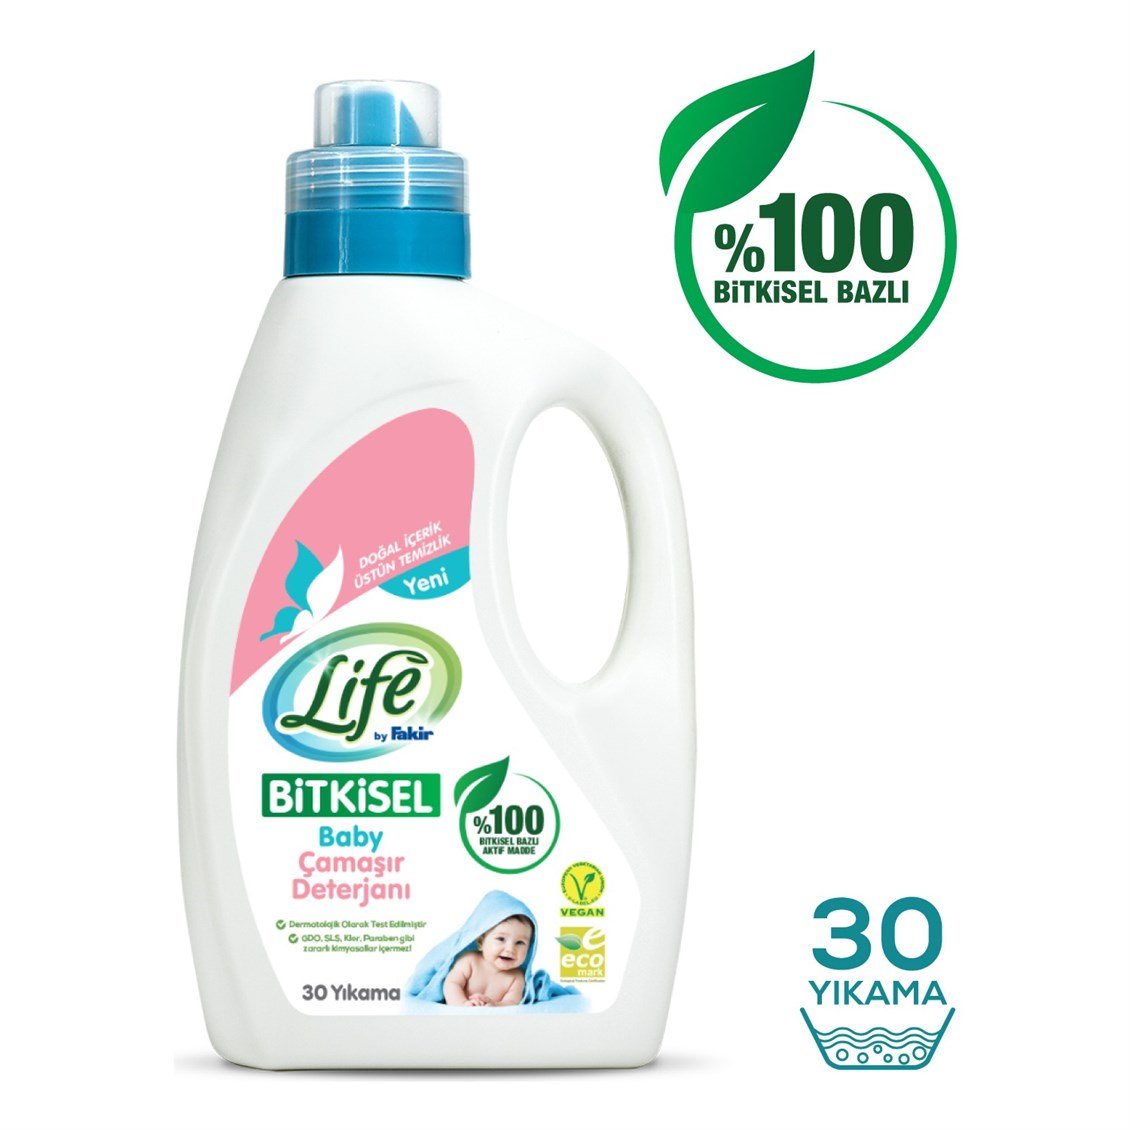 Life by Fakir %100 Bitkisel Bazlı Sıvı Bebek Çamaşır Deterjanı 1500 ml -  Onur Market